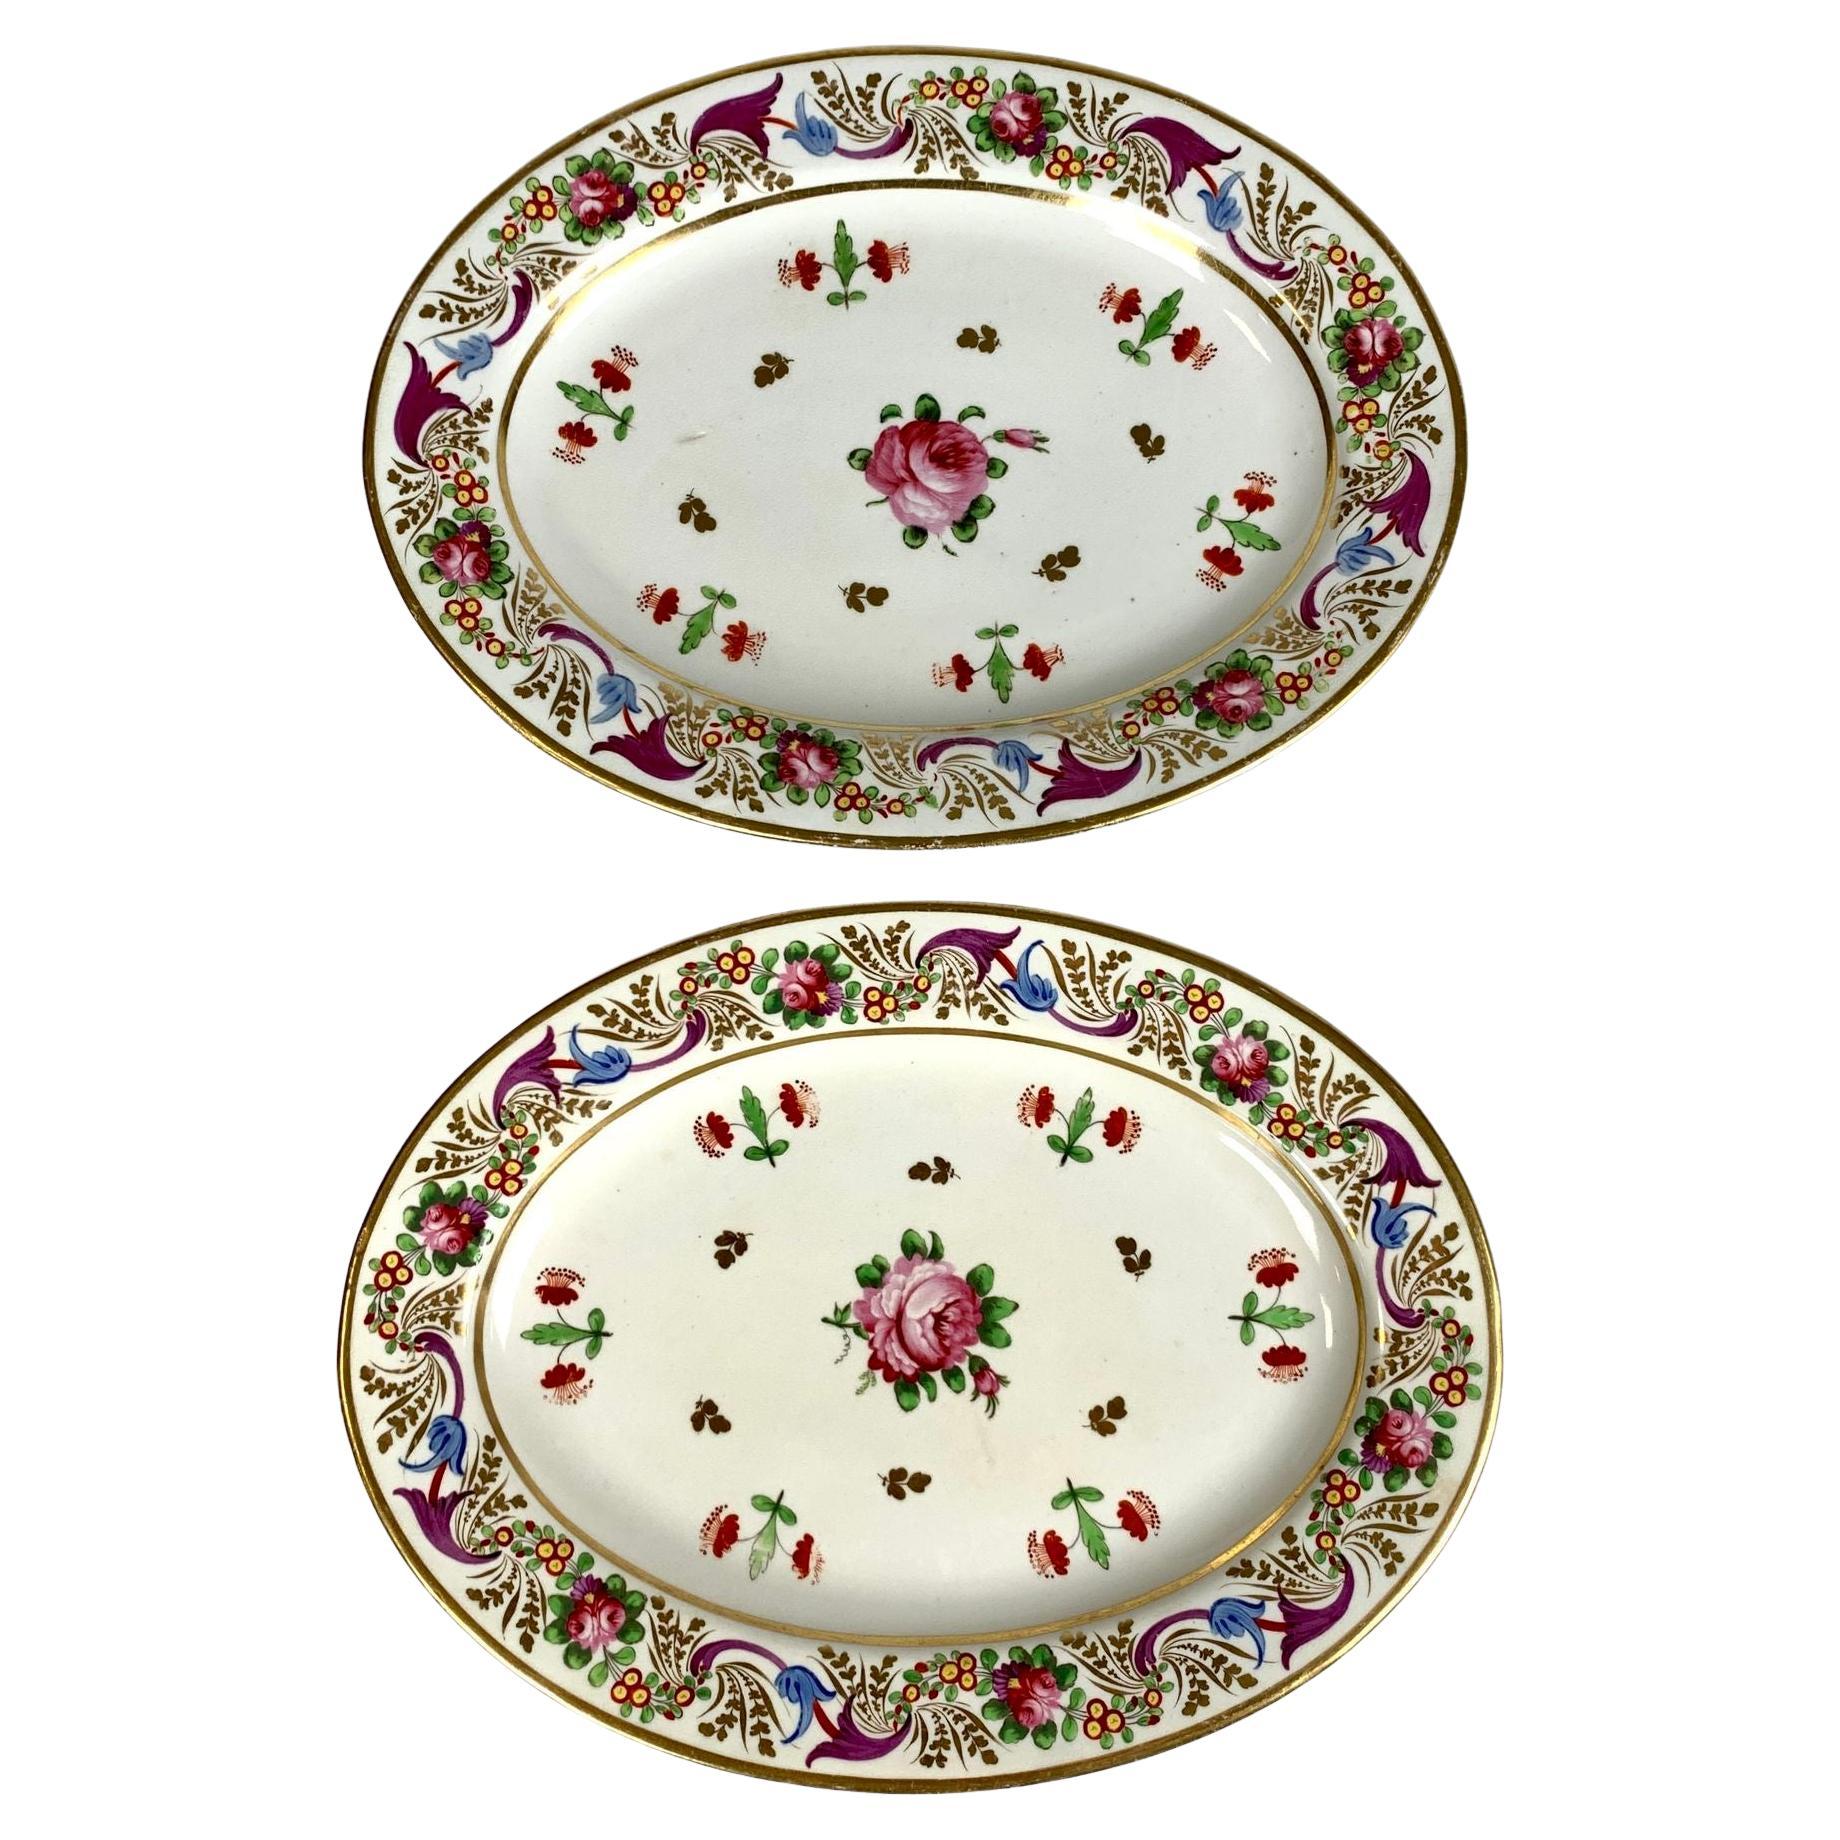 Paire de plats ovales anciens en porcelaine de la période Régence peints à la main en Angleterre, vers 1820